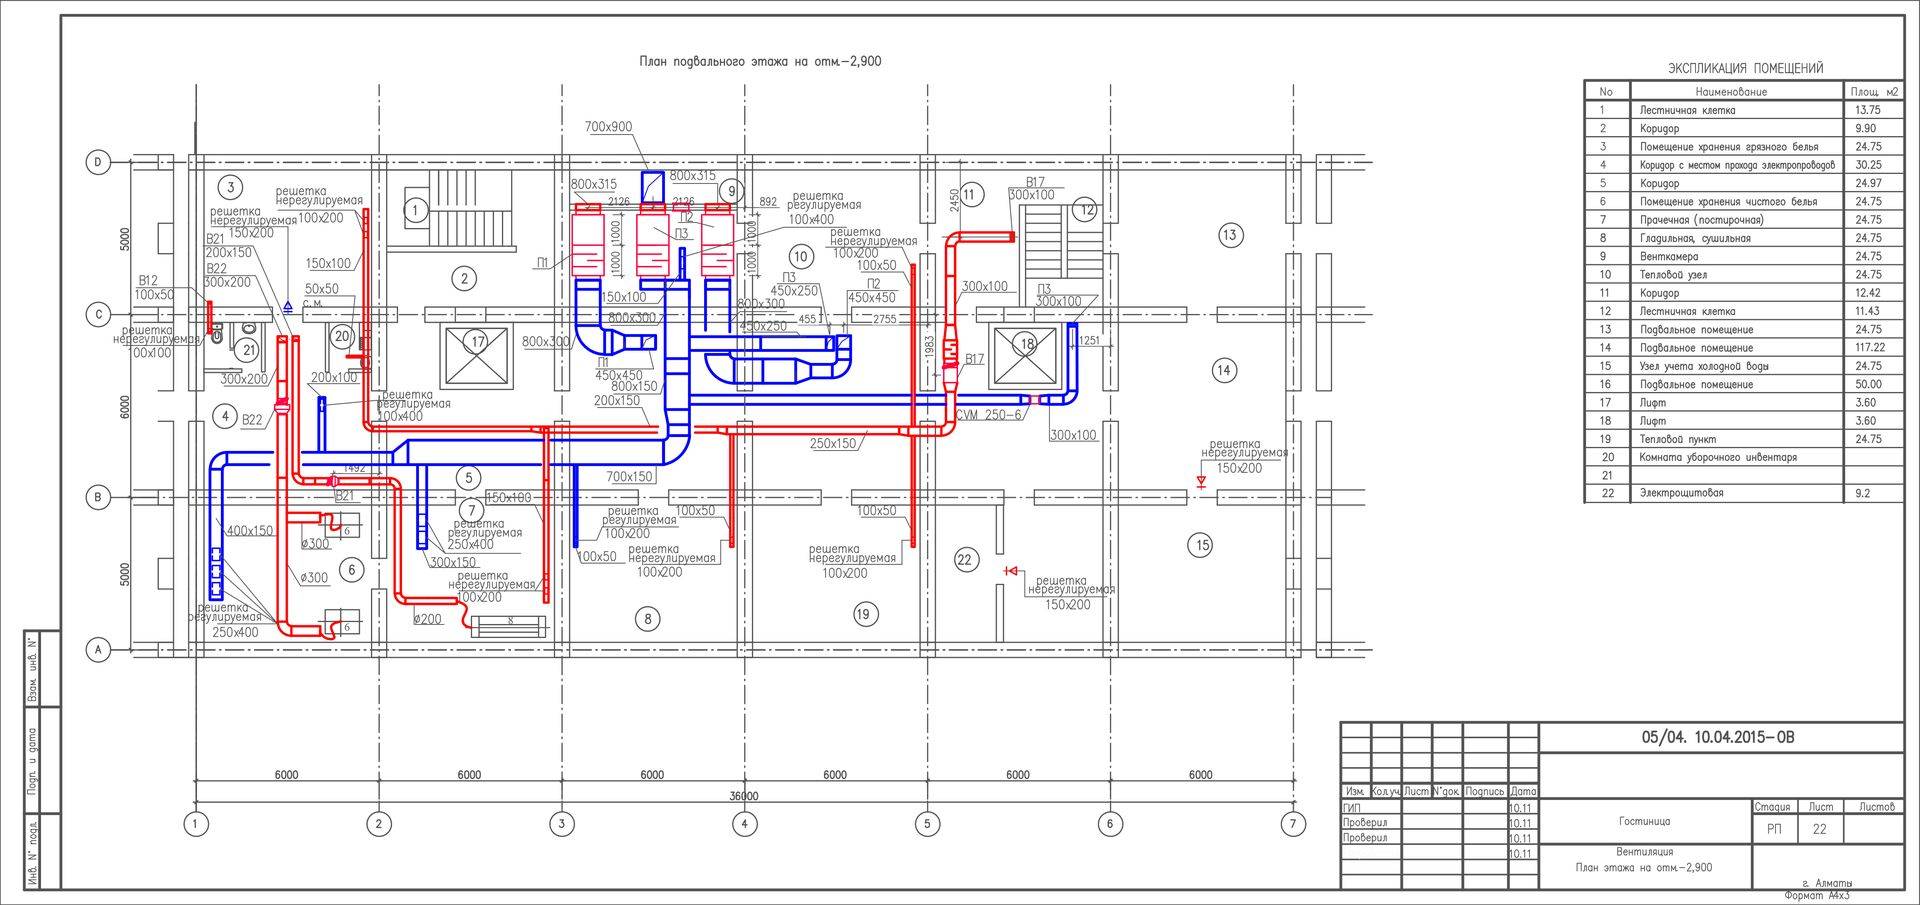 Пример рабочей документации на инженерные системы здания